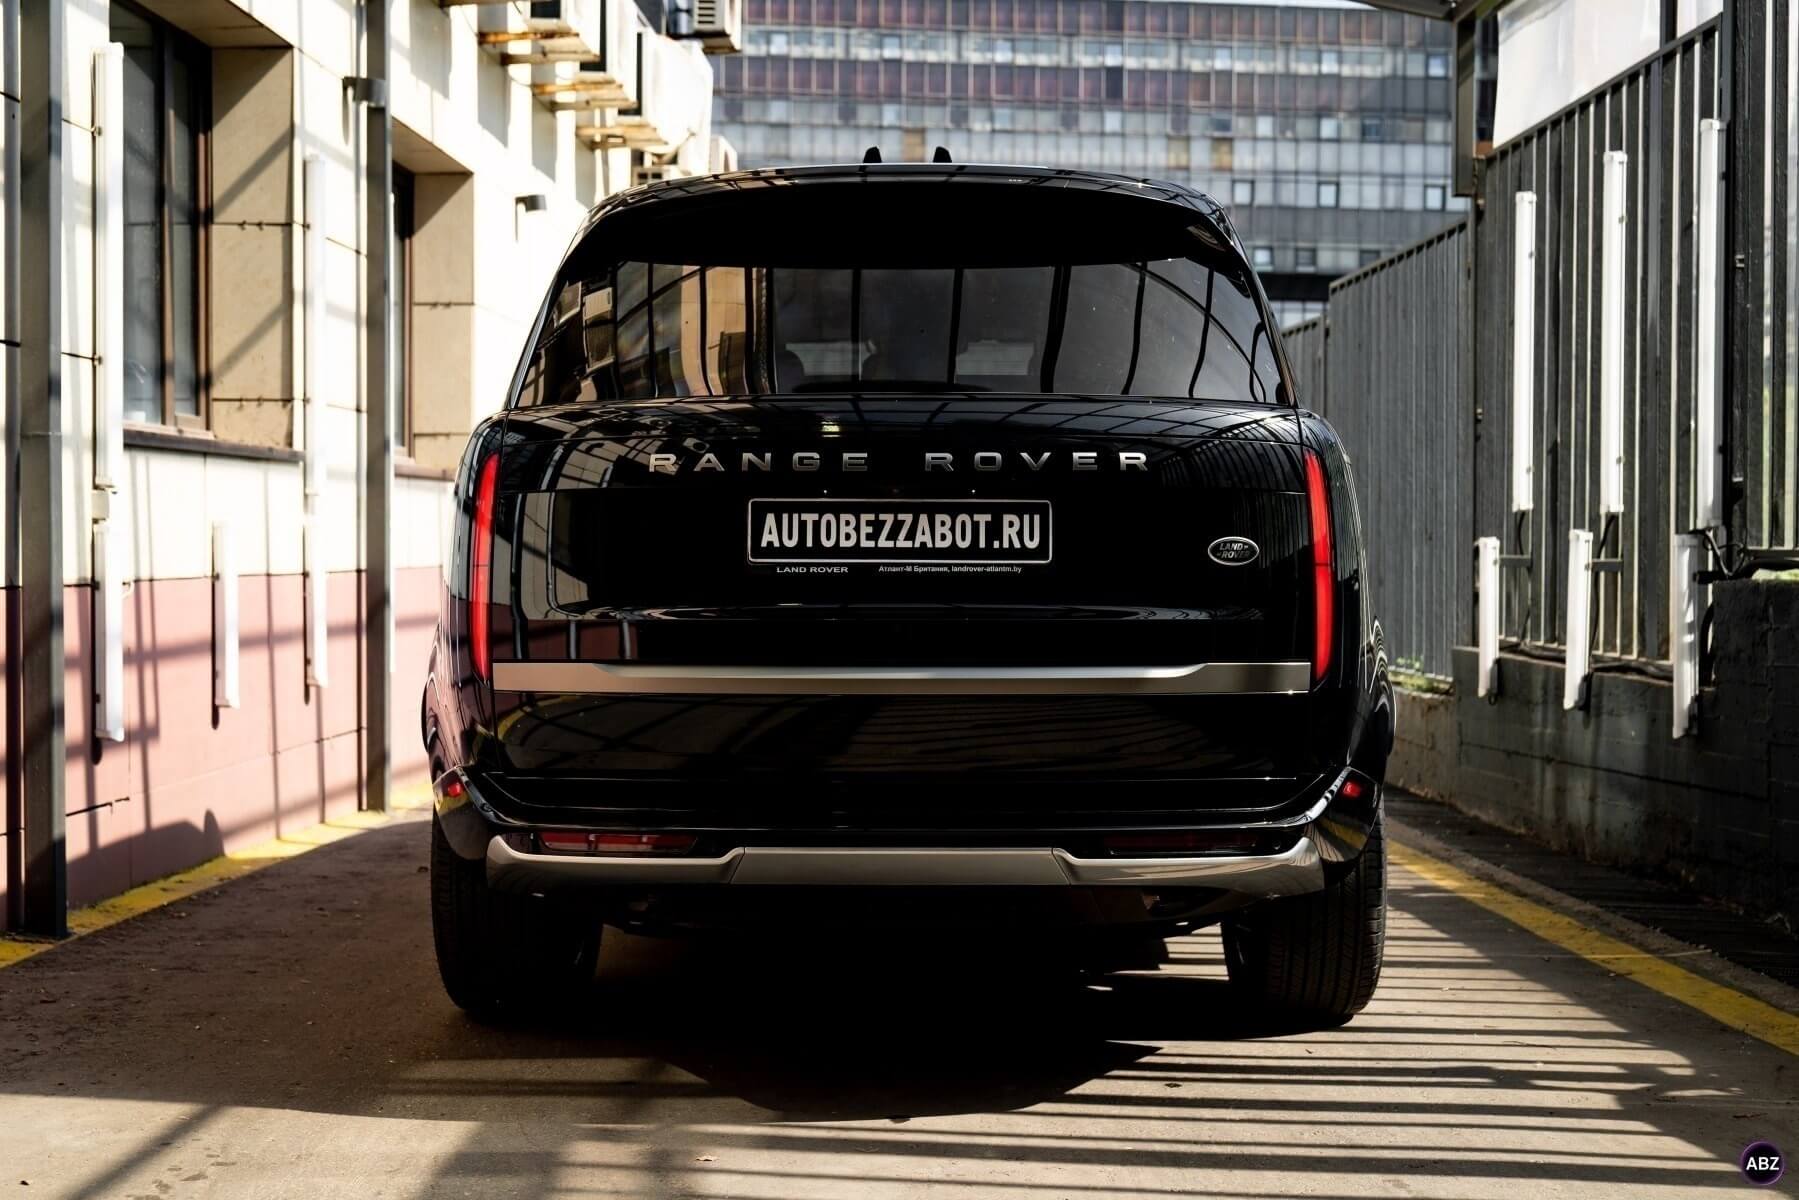 Фото Черный Range Rover под защитой глянцевого Llumar Gloss